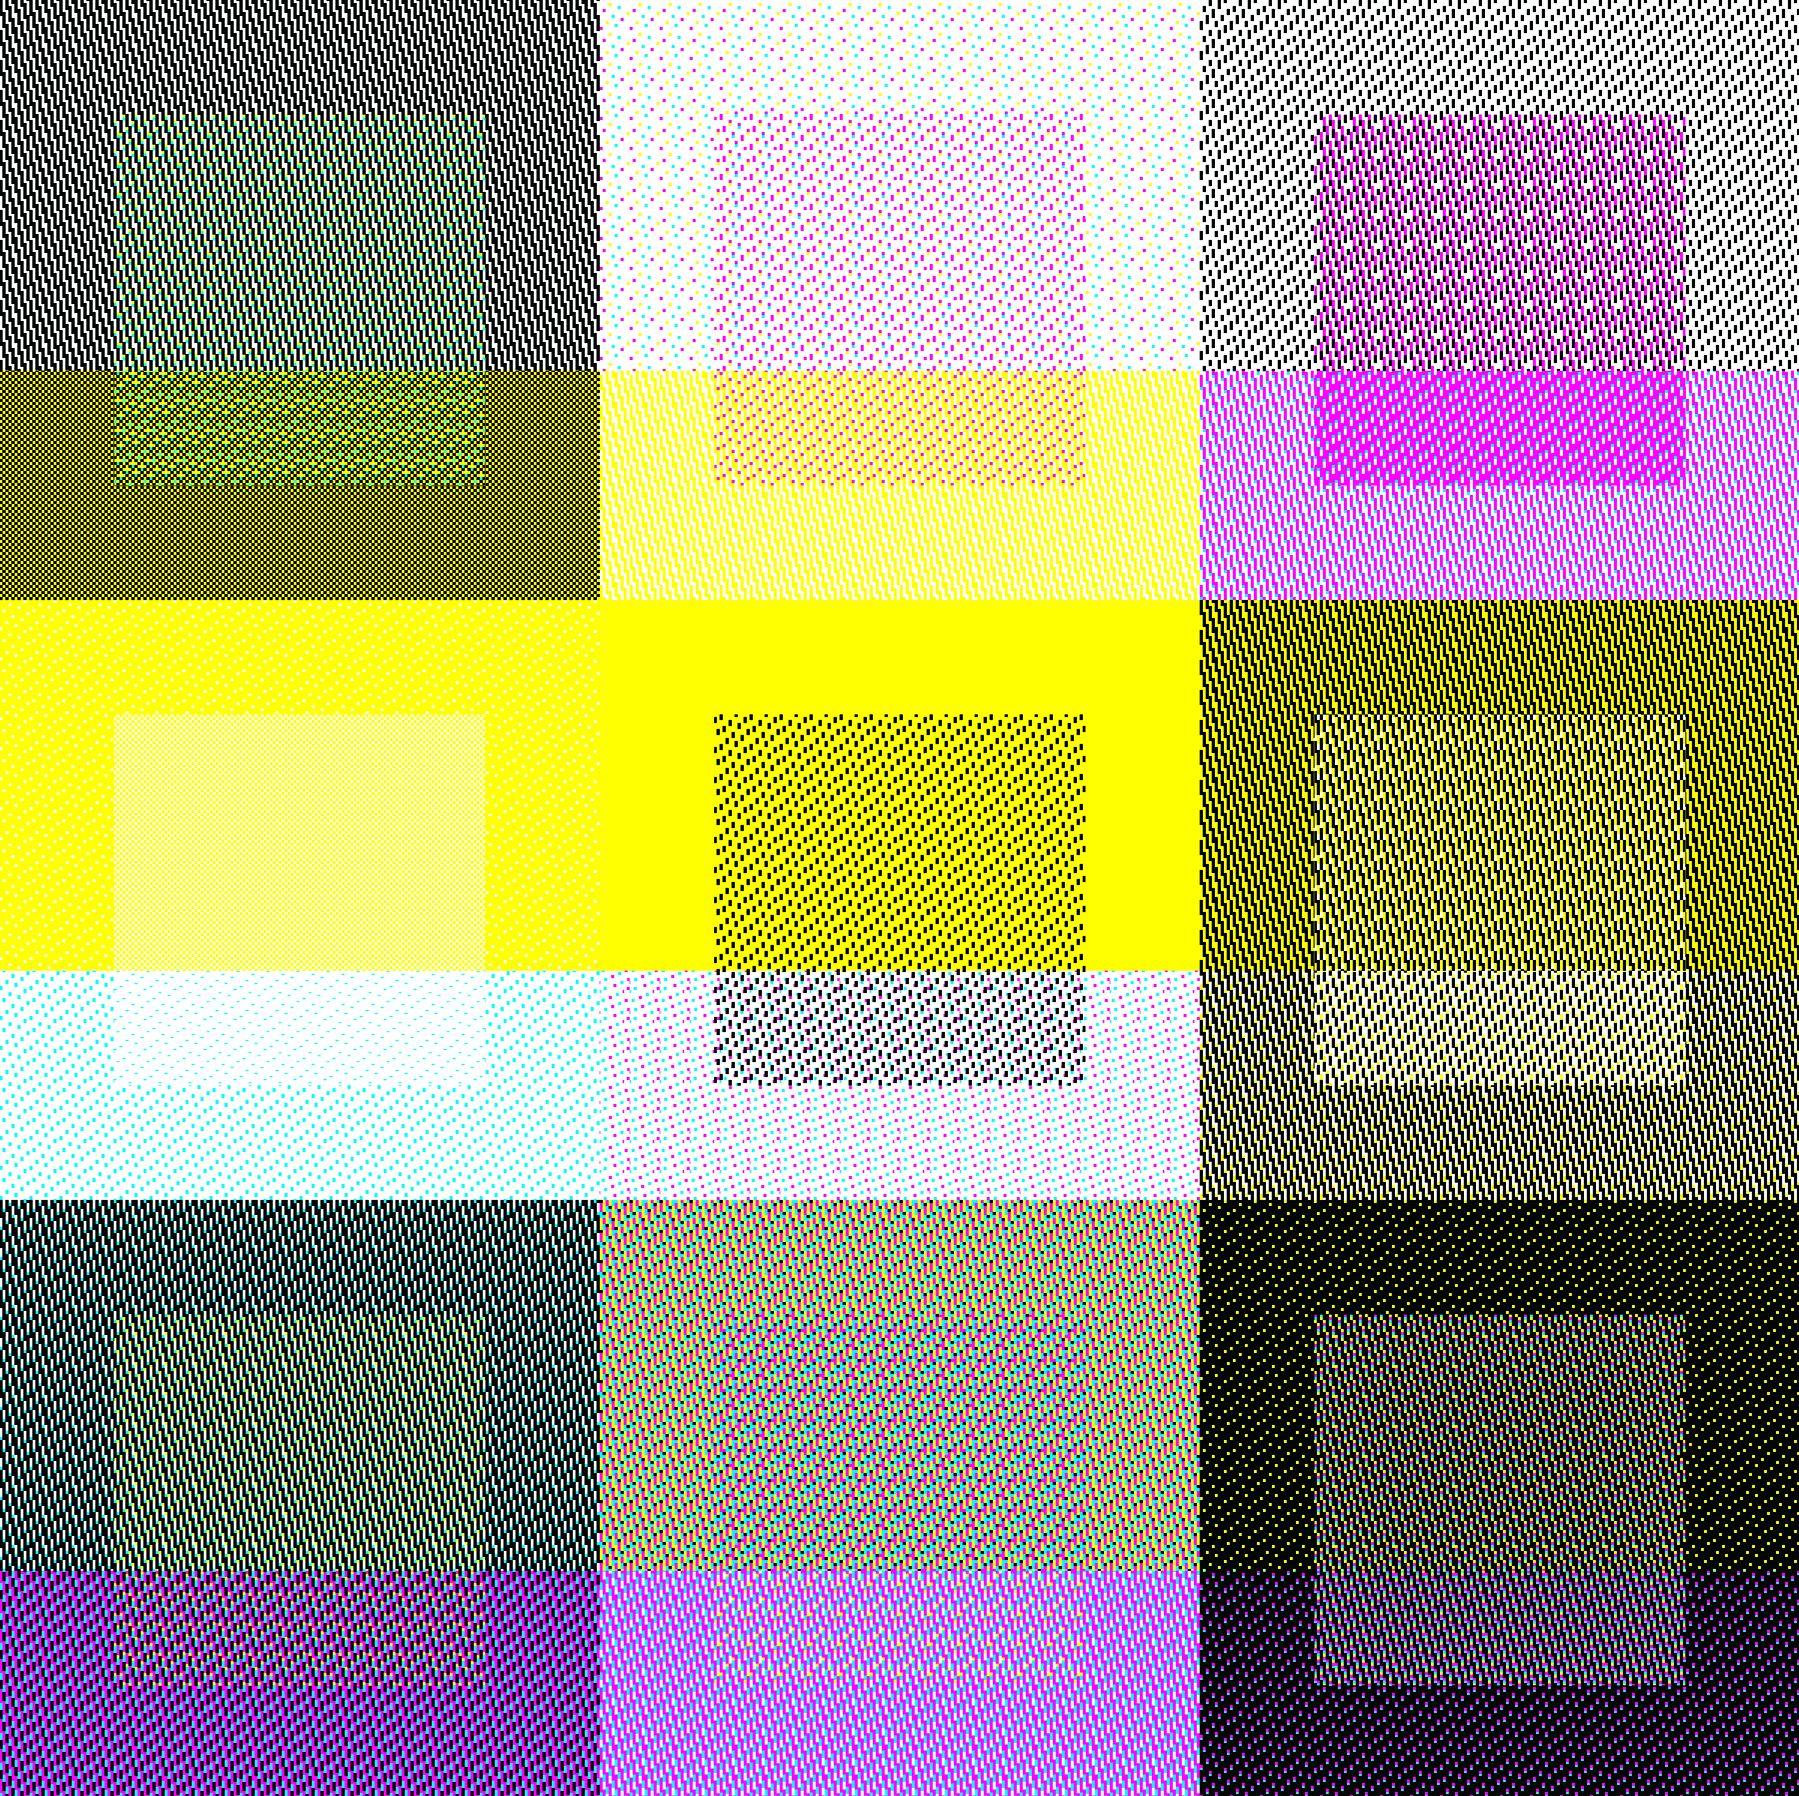 Decheng Cui Abstract Print - Color Blocks Matrix 1~9, Digital on Metal